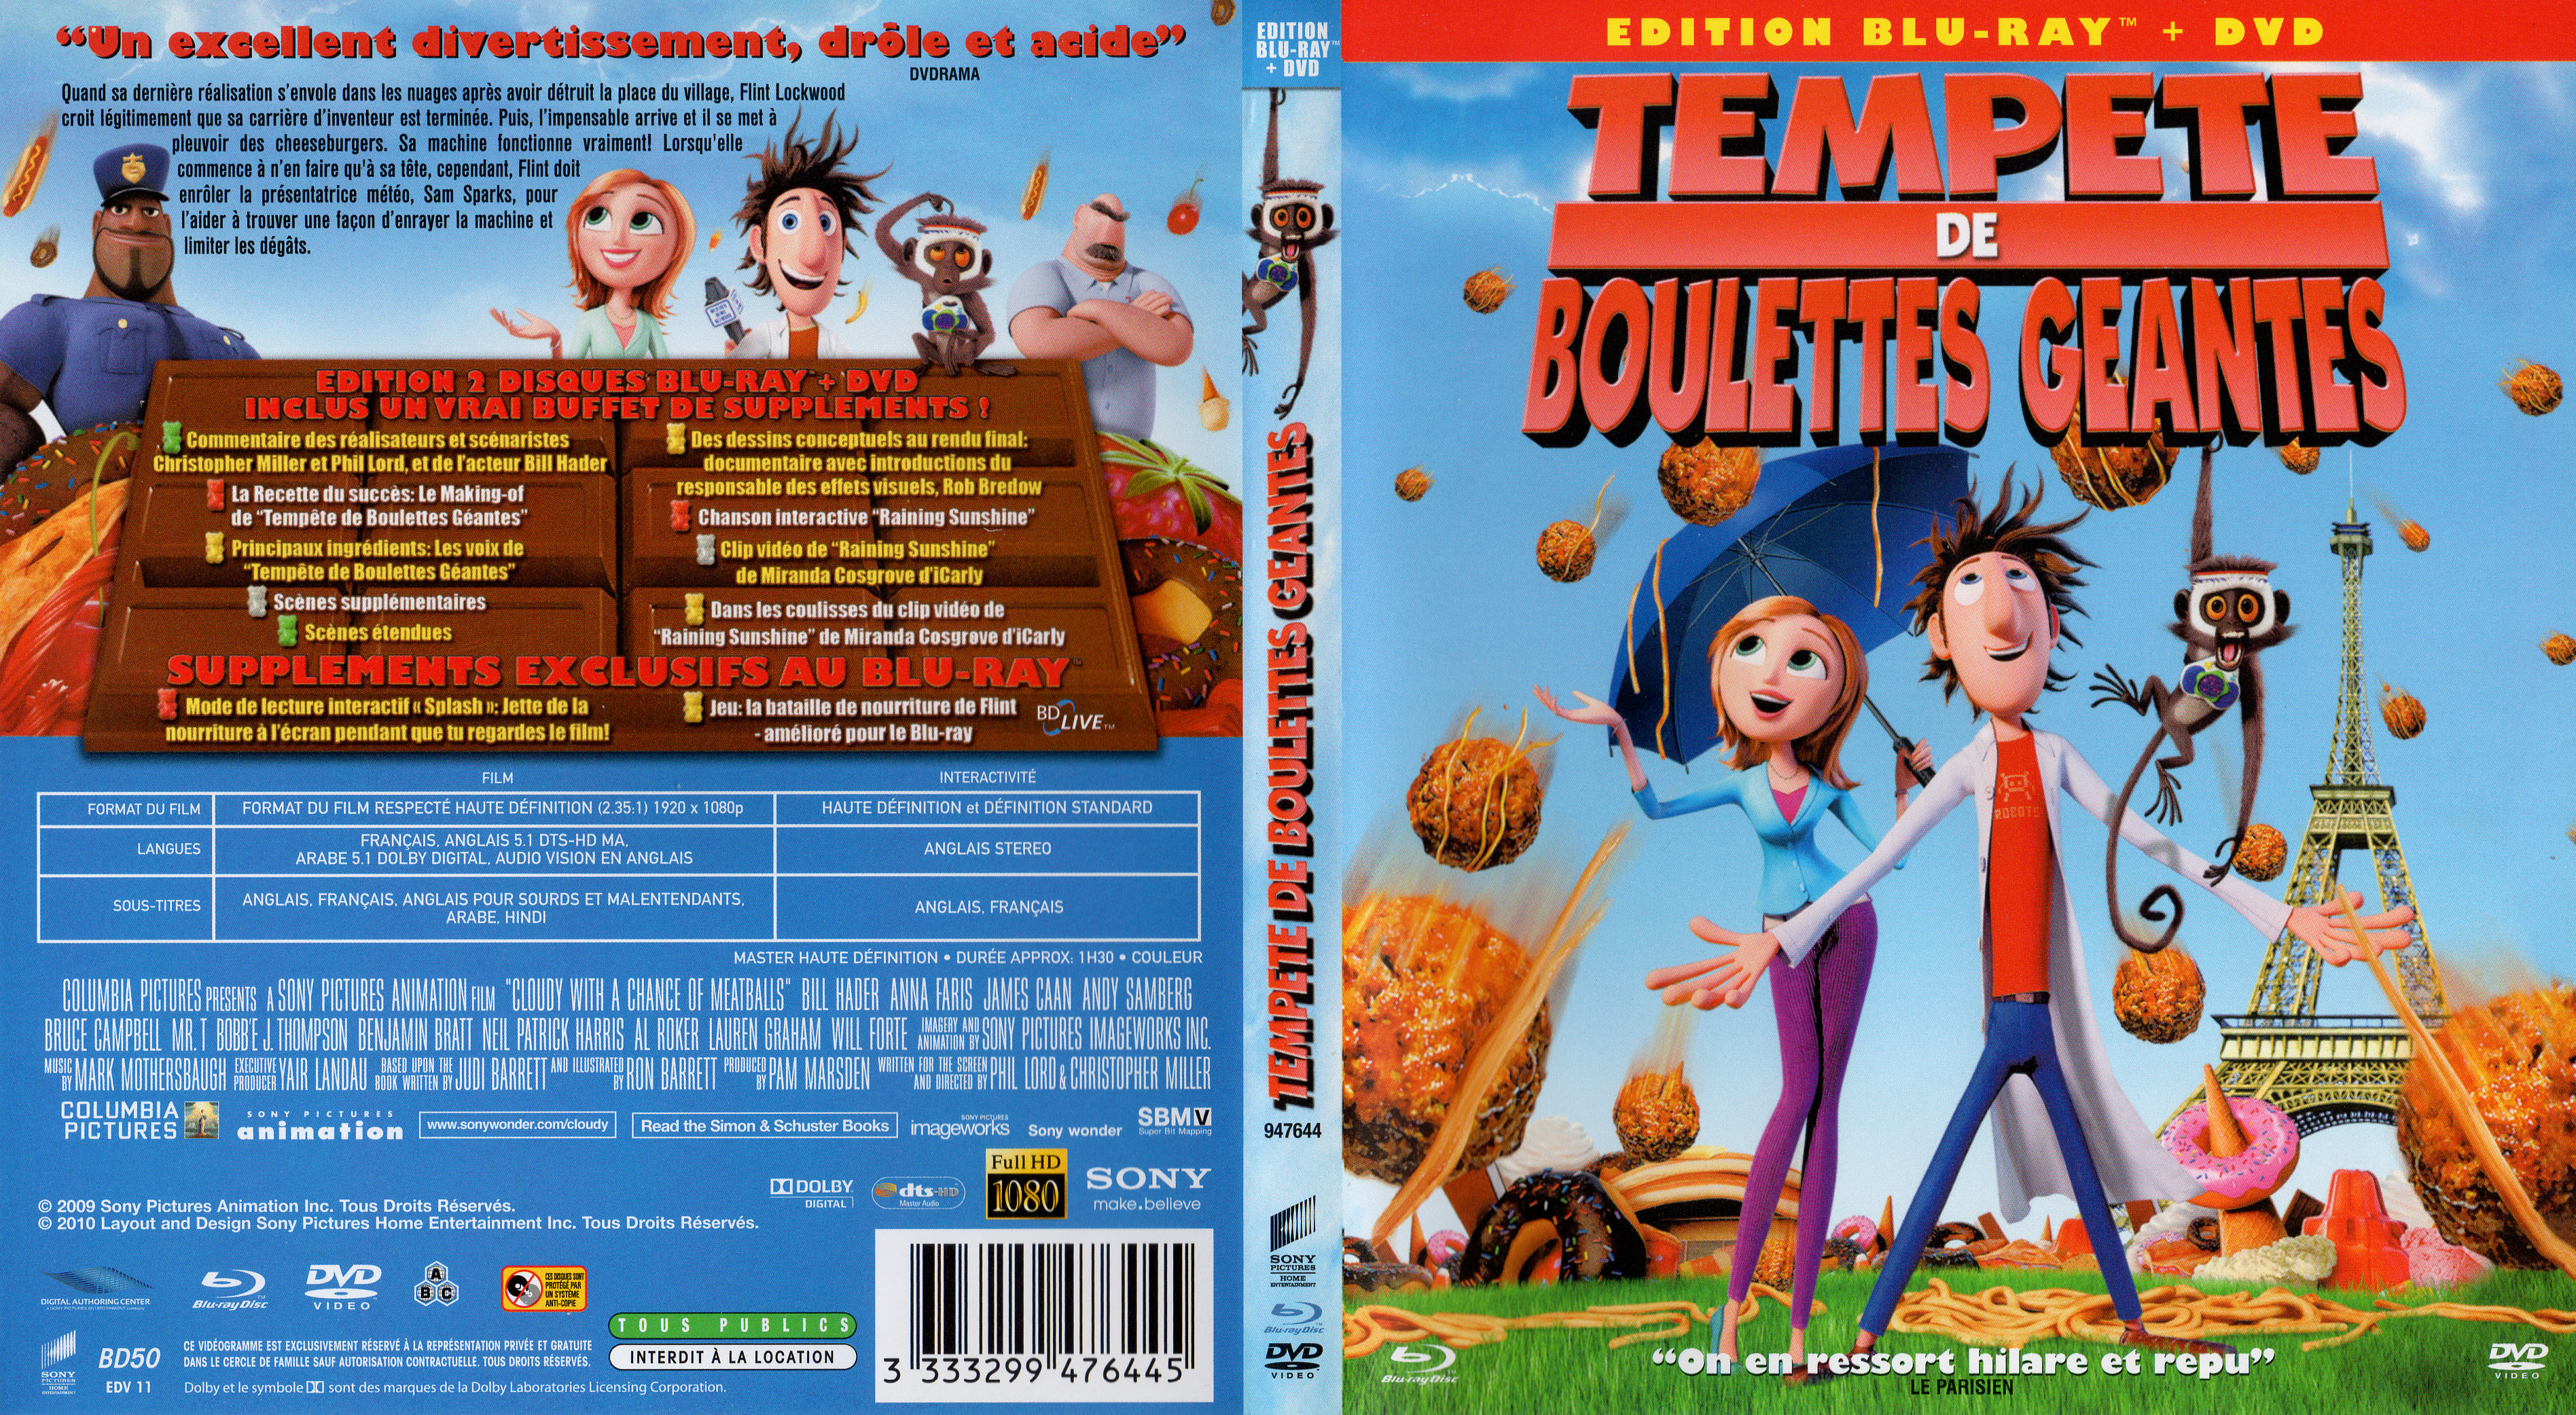 Jaquette DVD Tempete de boulettes geantes (BLU-RAY)